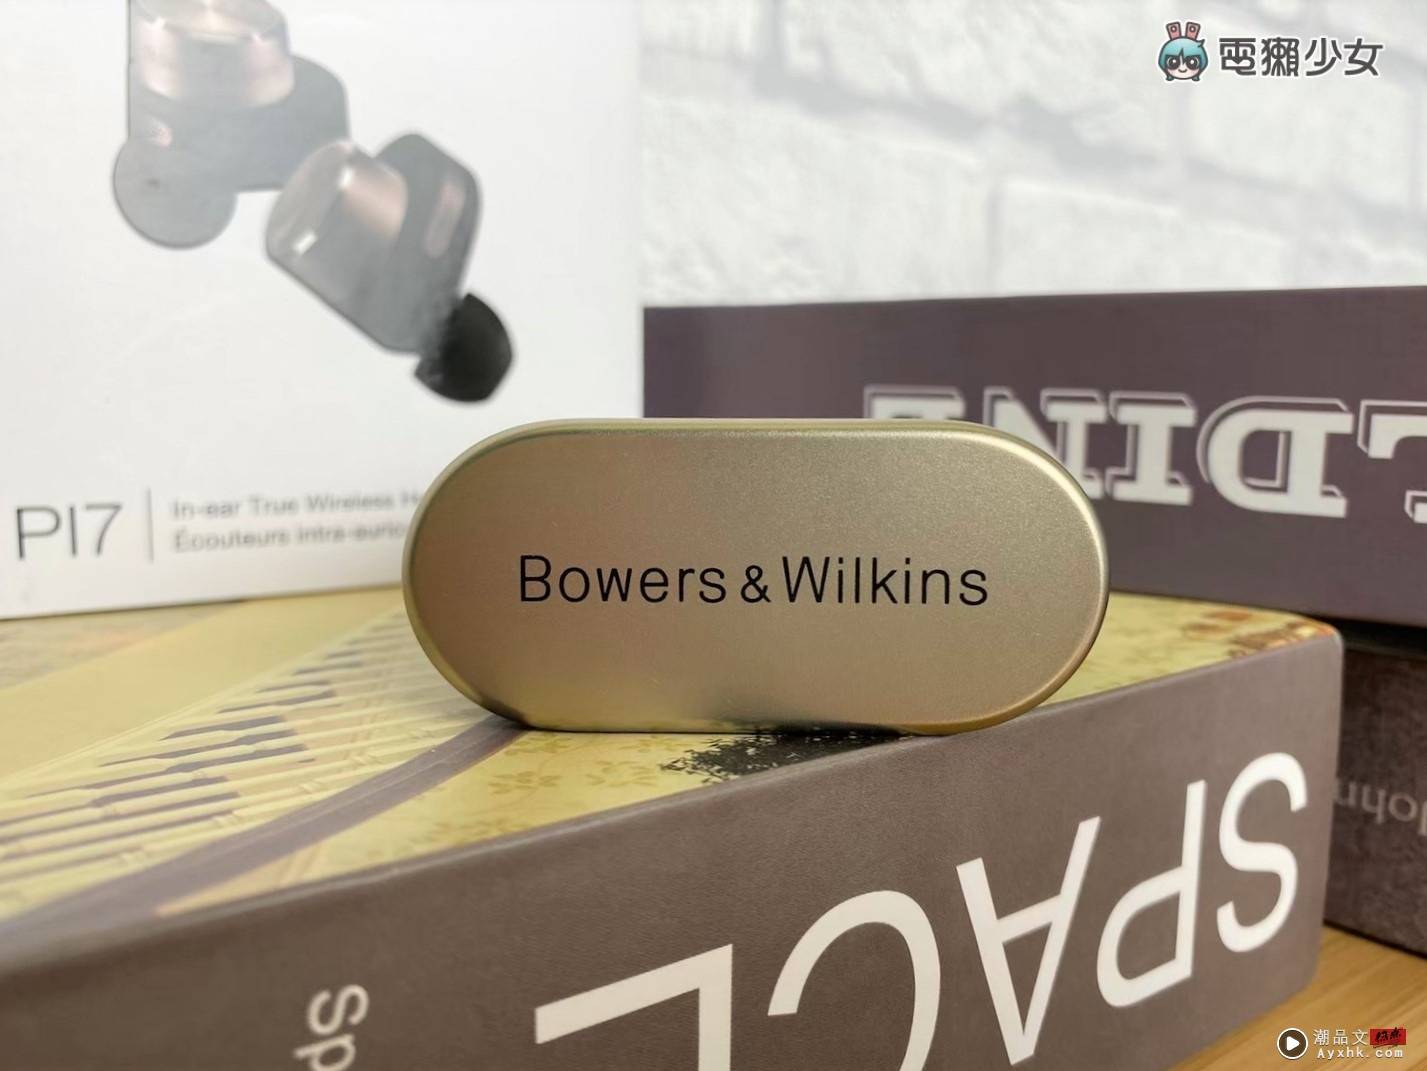 开箱｜奢华耳机体验‘ Bowers & Wilkins PI7 ’音质超好 还能当蓝牙发射器 数码科技 图3张